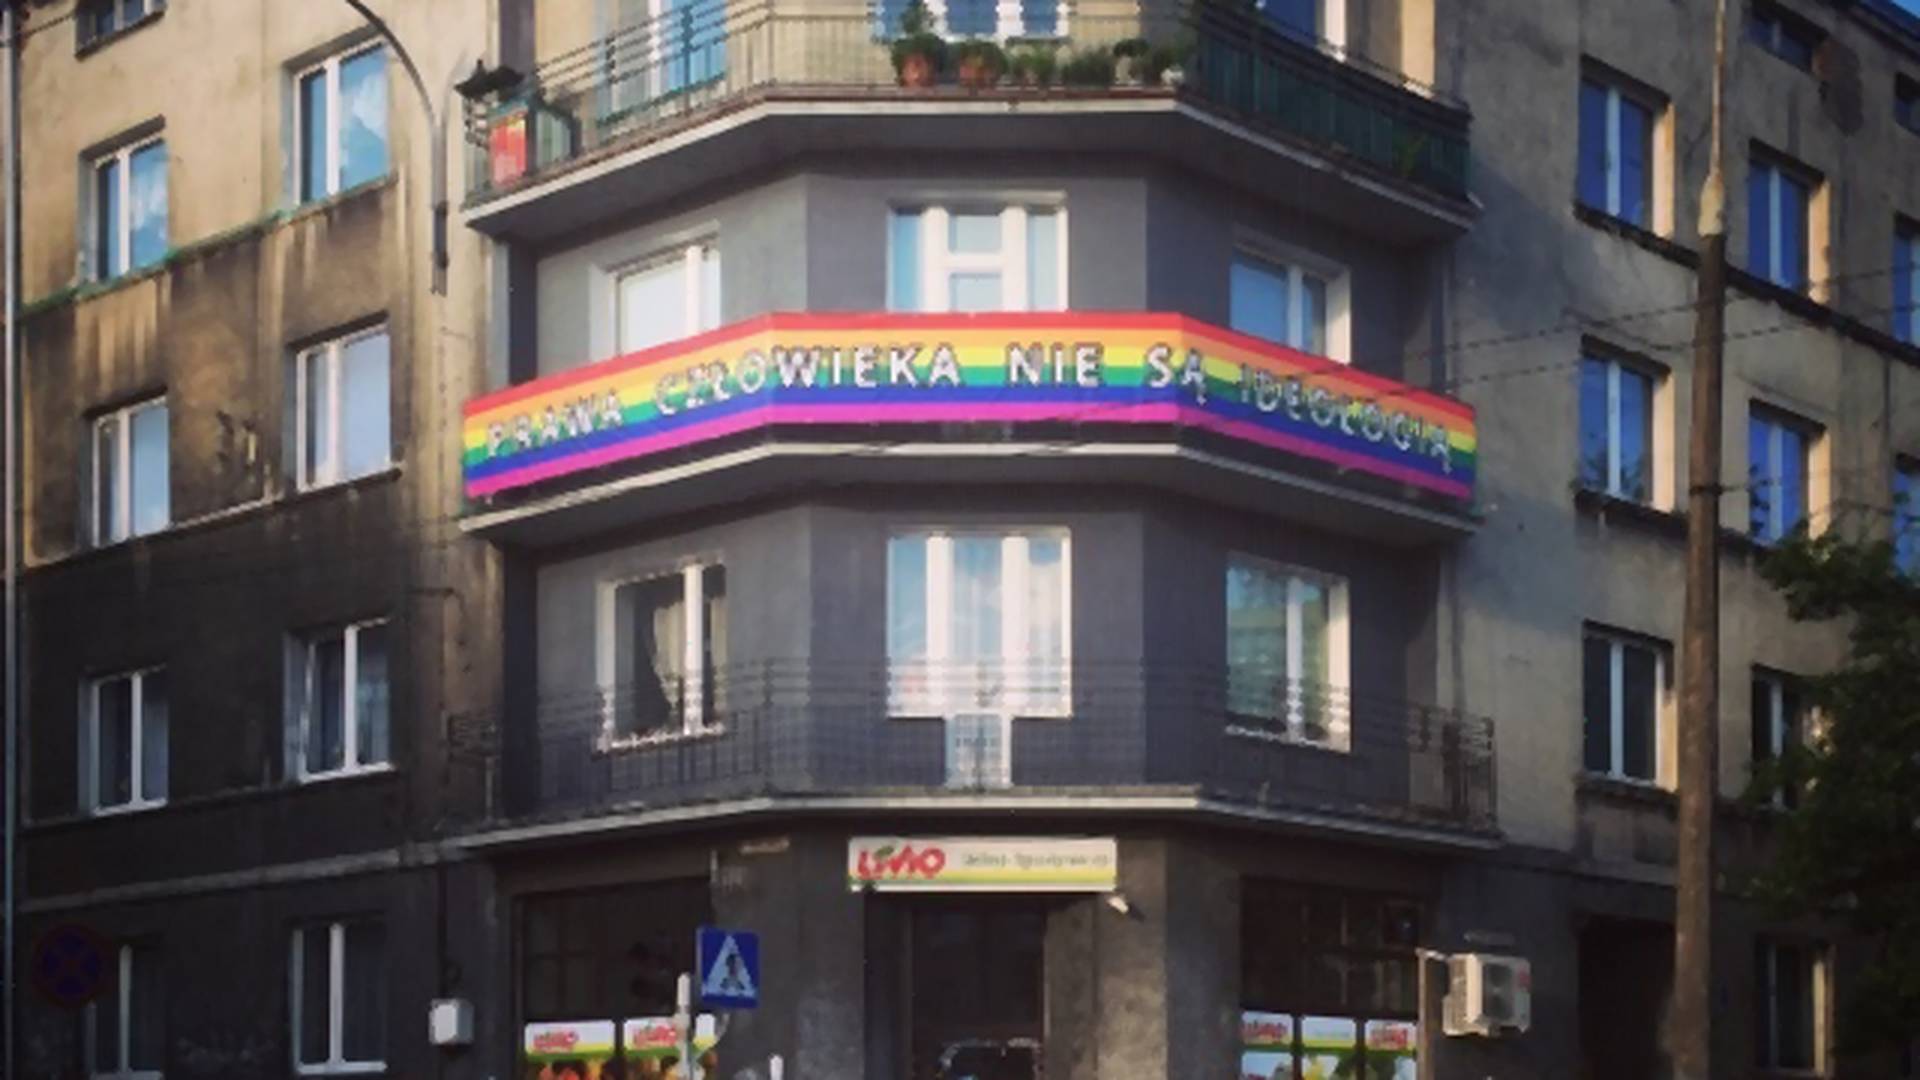 "Wywieś flagę, daj odwagę". Boisz się wyrazić solidarność z LGBT+? Zobacz, jak zrobili to inni